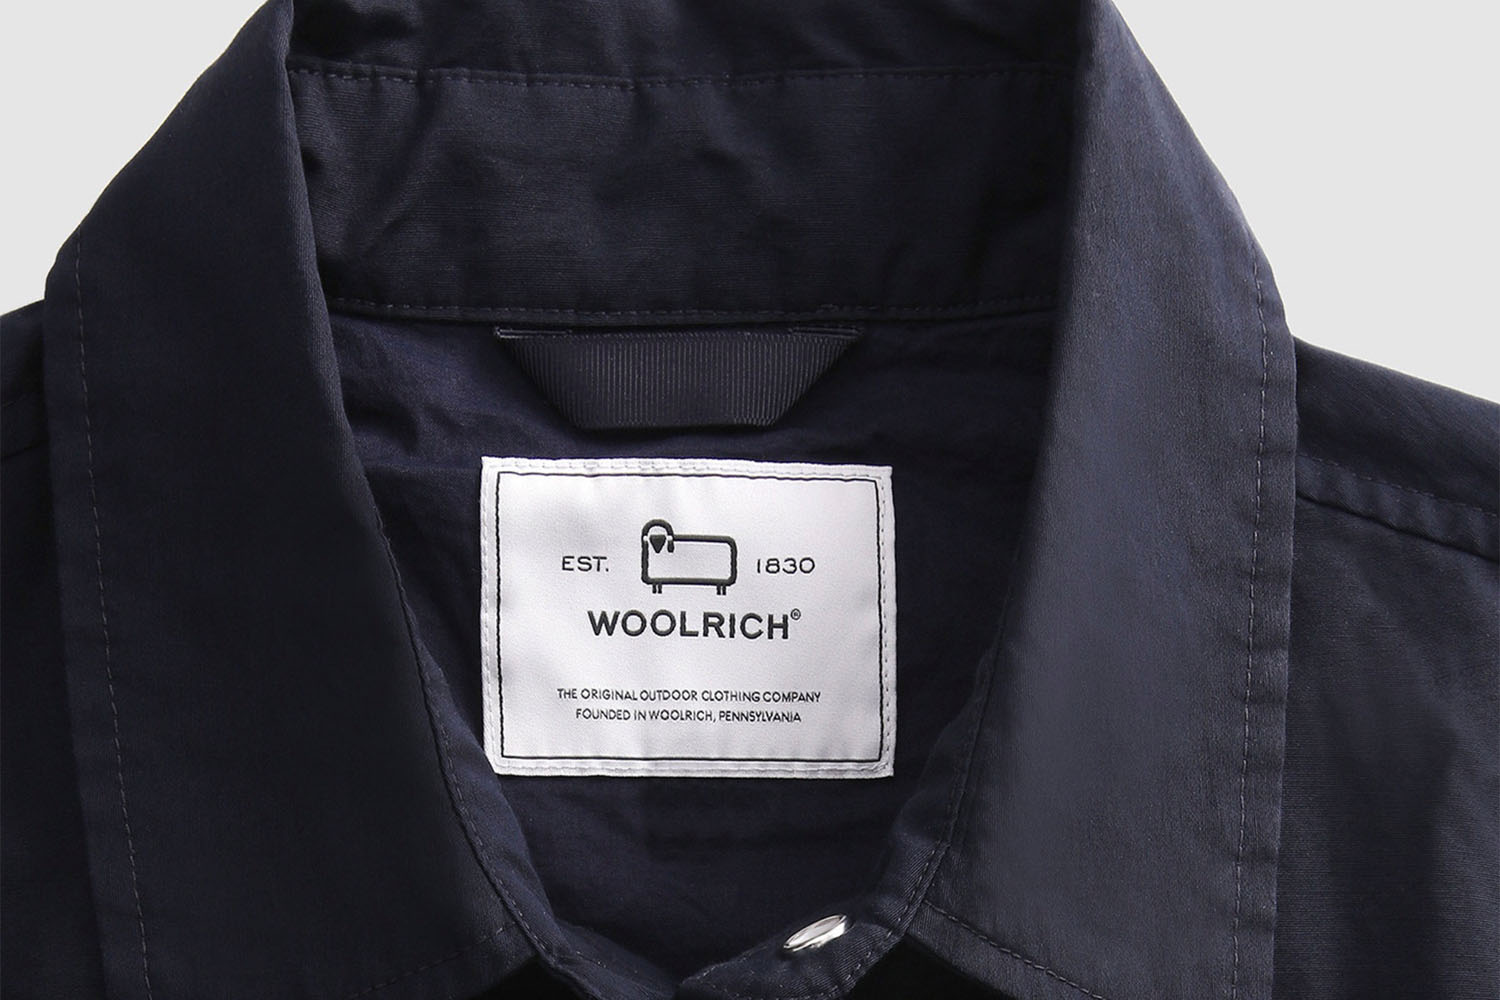 A close up shot of a Woolrich shirt label